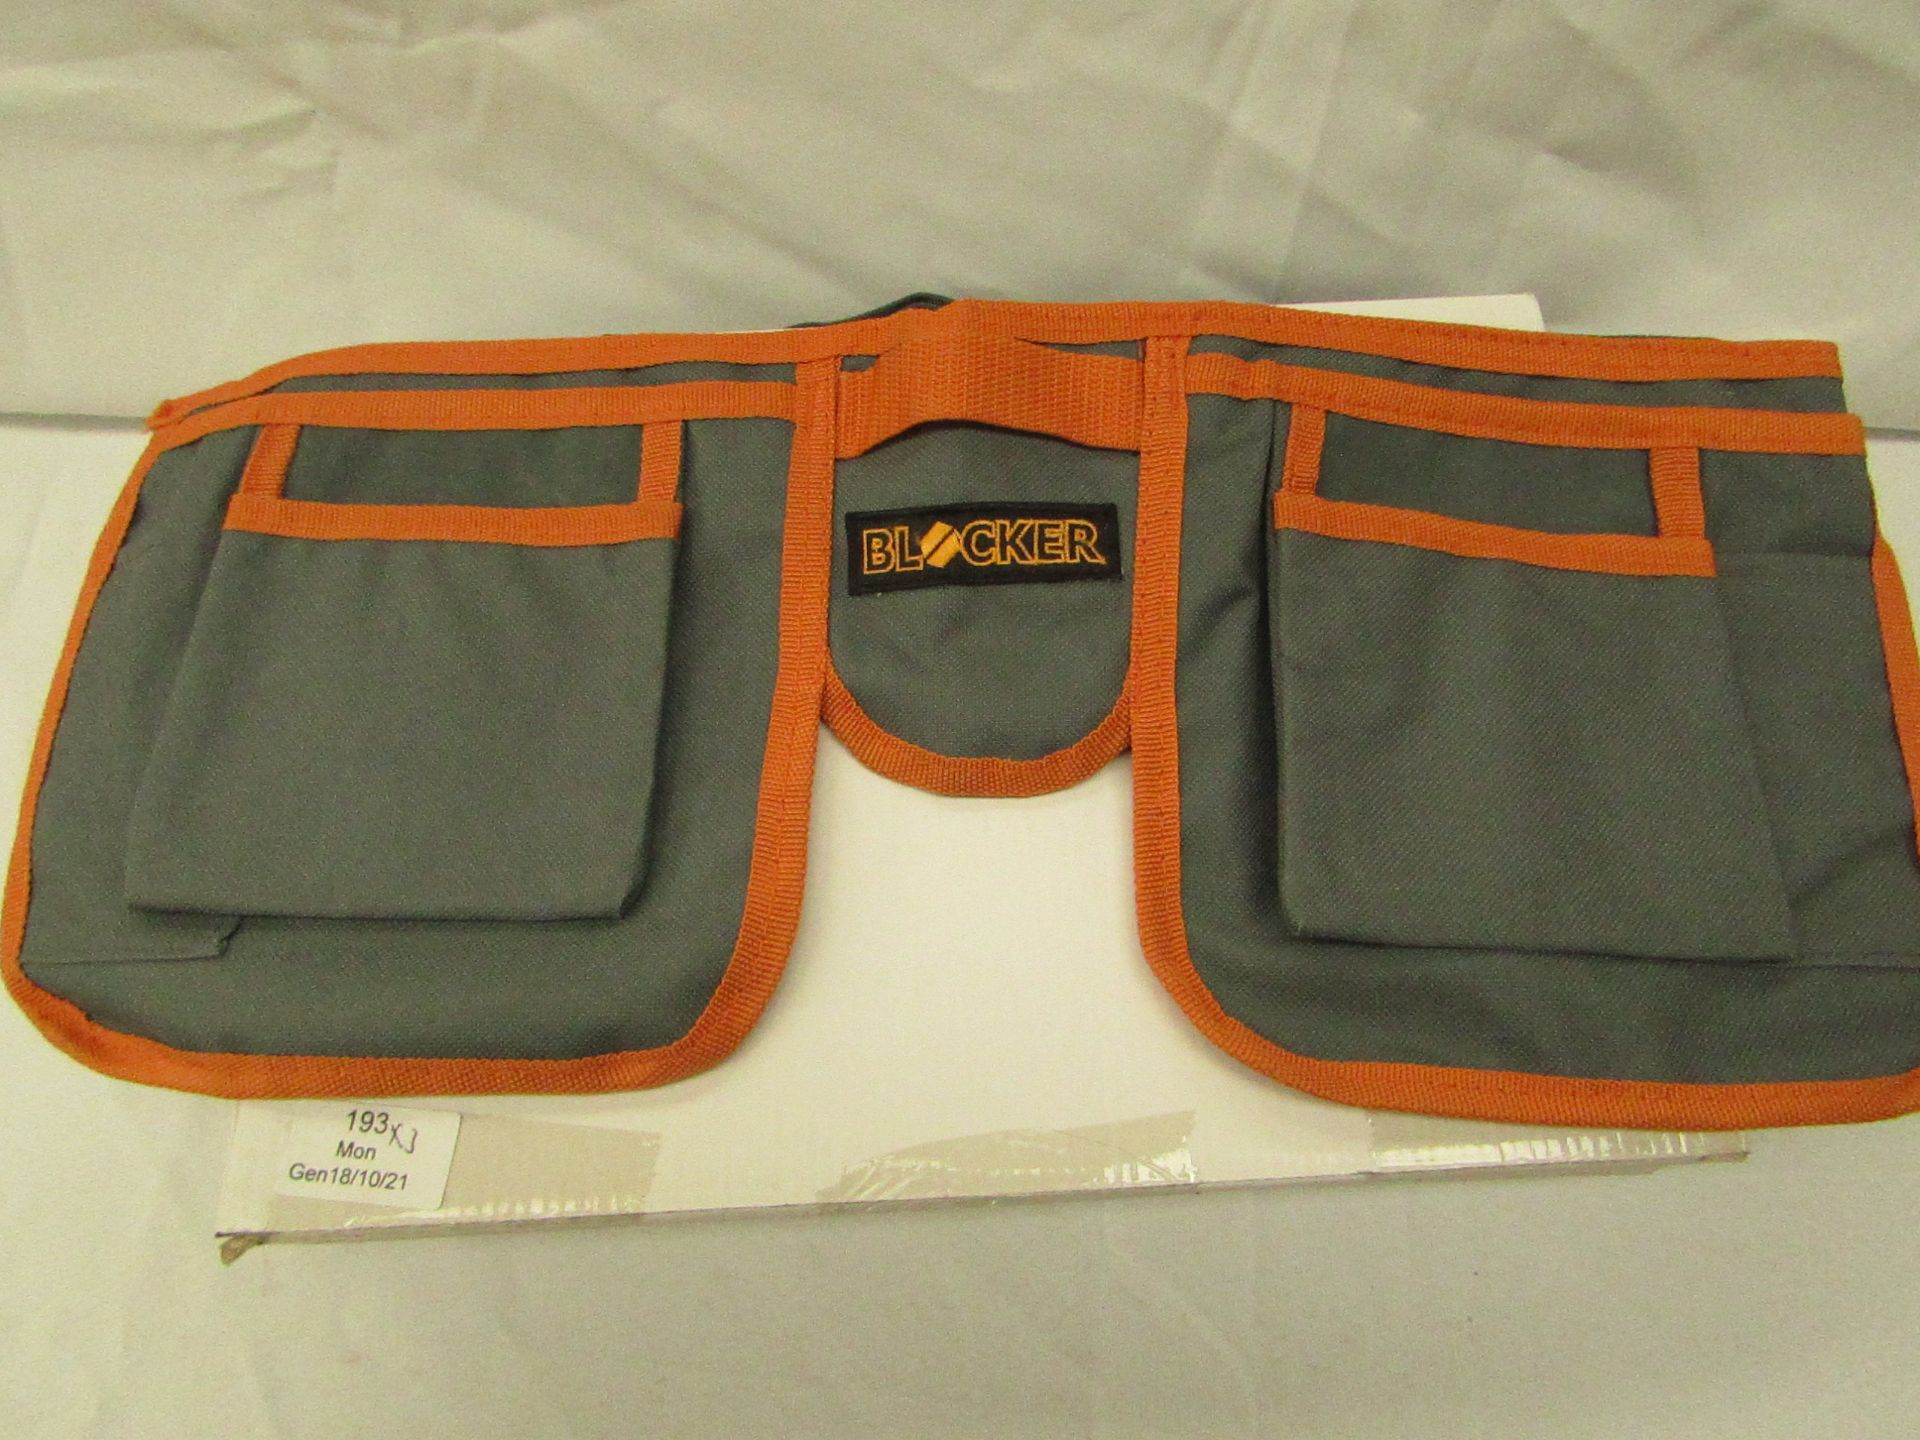 3x Blacker - Belt Tool Bag - Unused & Boxed.